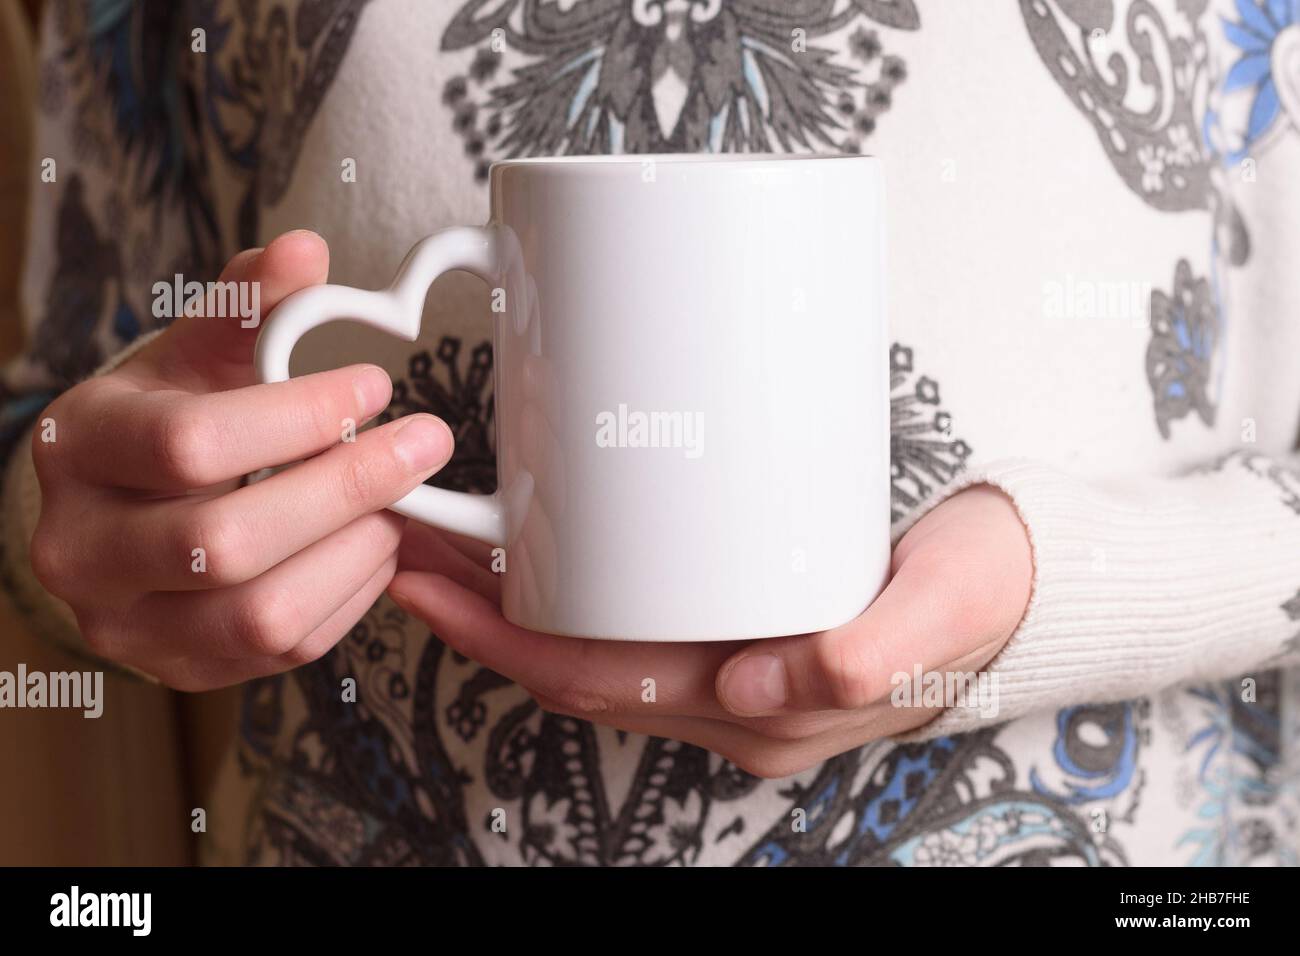 Female hands holding a white mug mockup Stock Photo